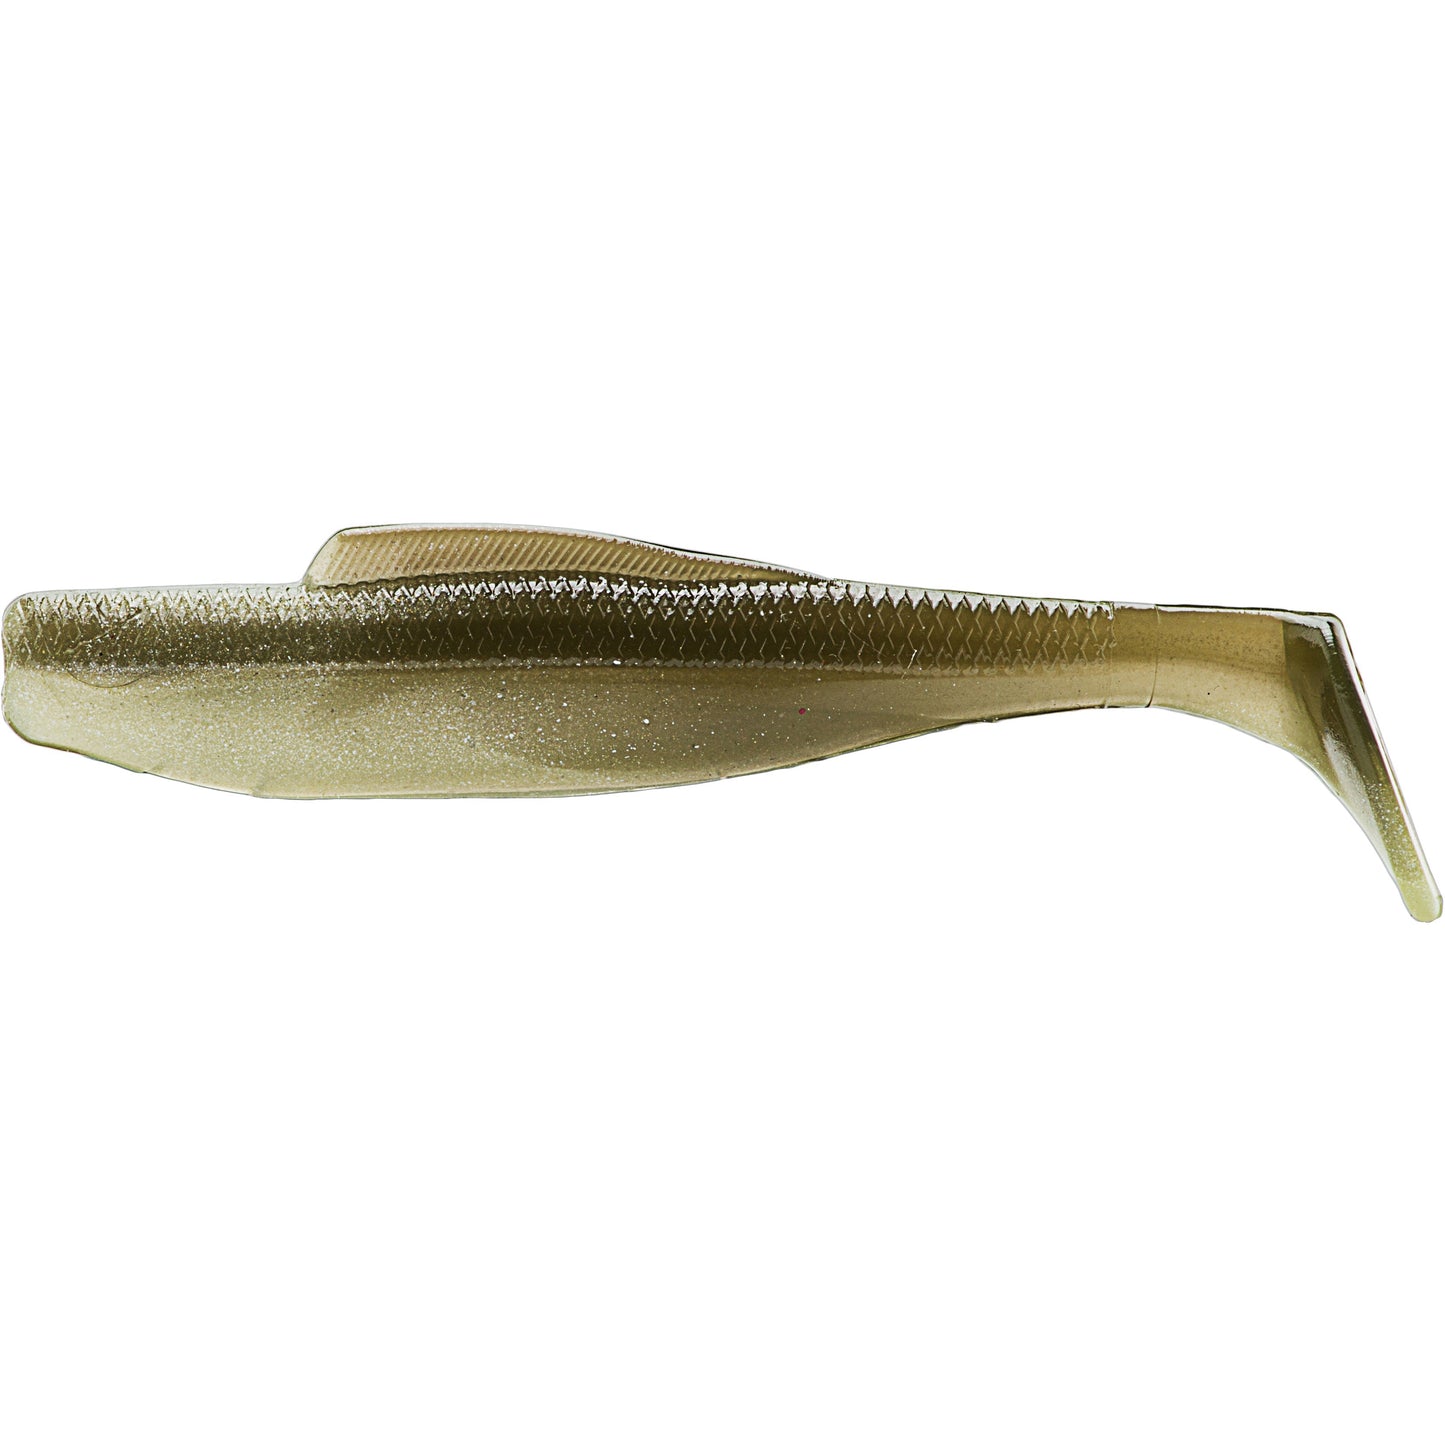 Z-Man DieZel MinnowZ 5 inch Paddle Tail Swimbait 4 pack